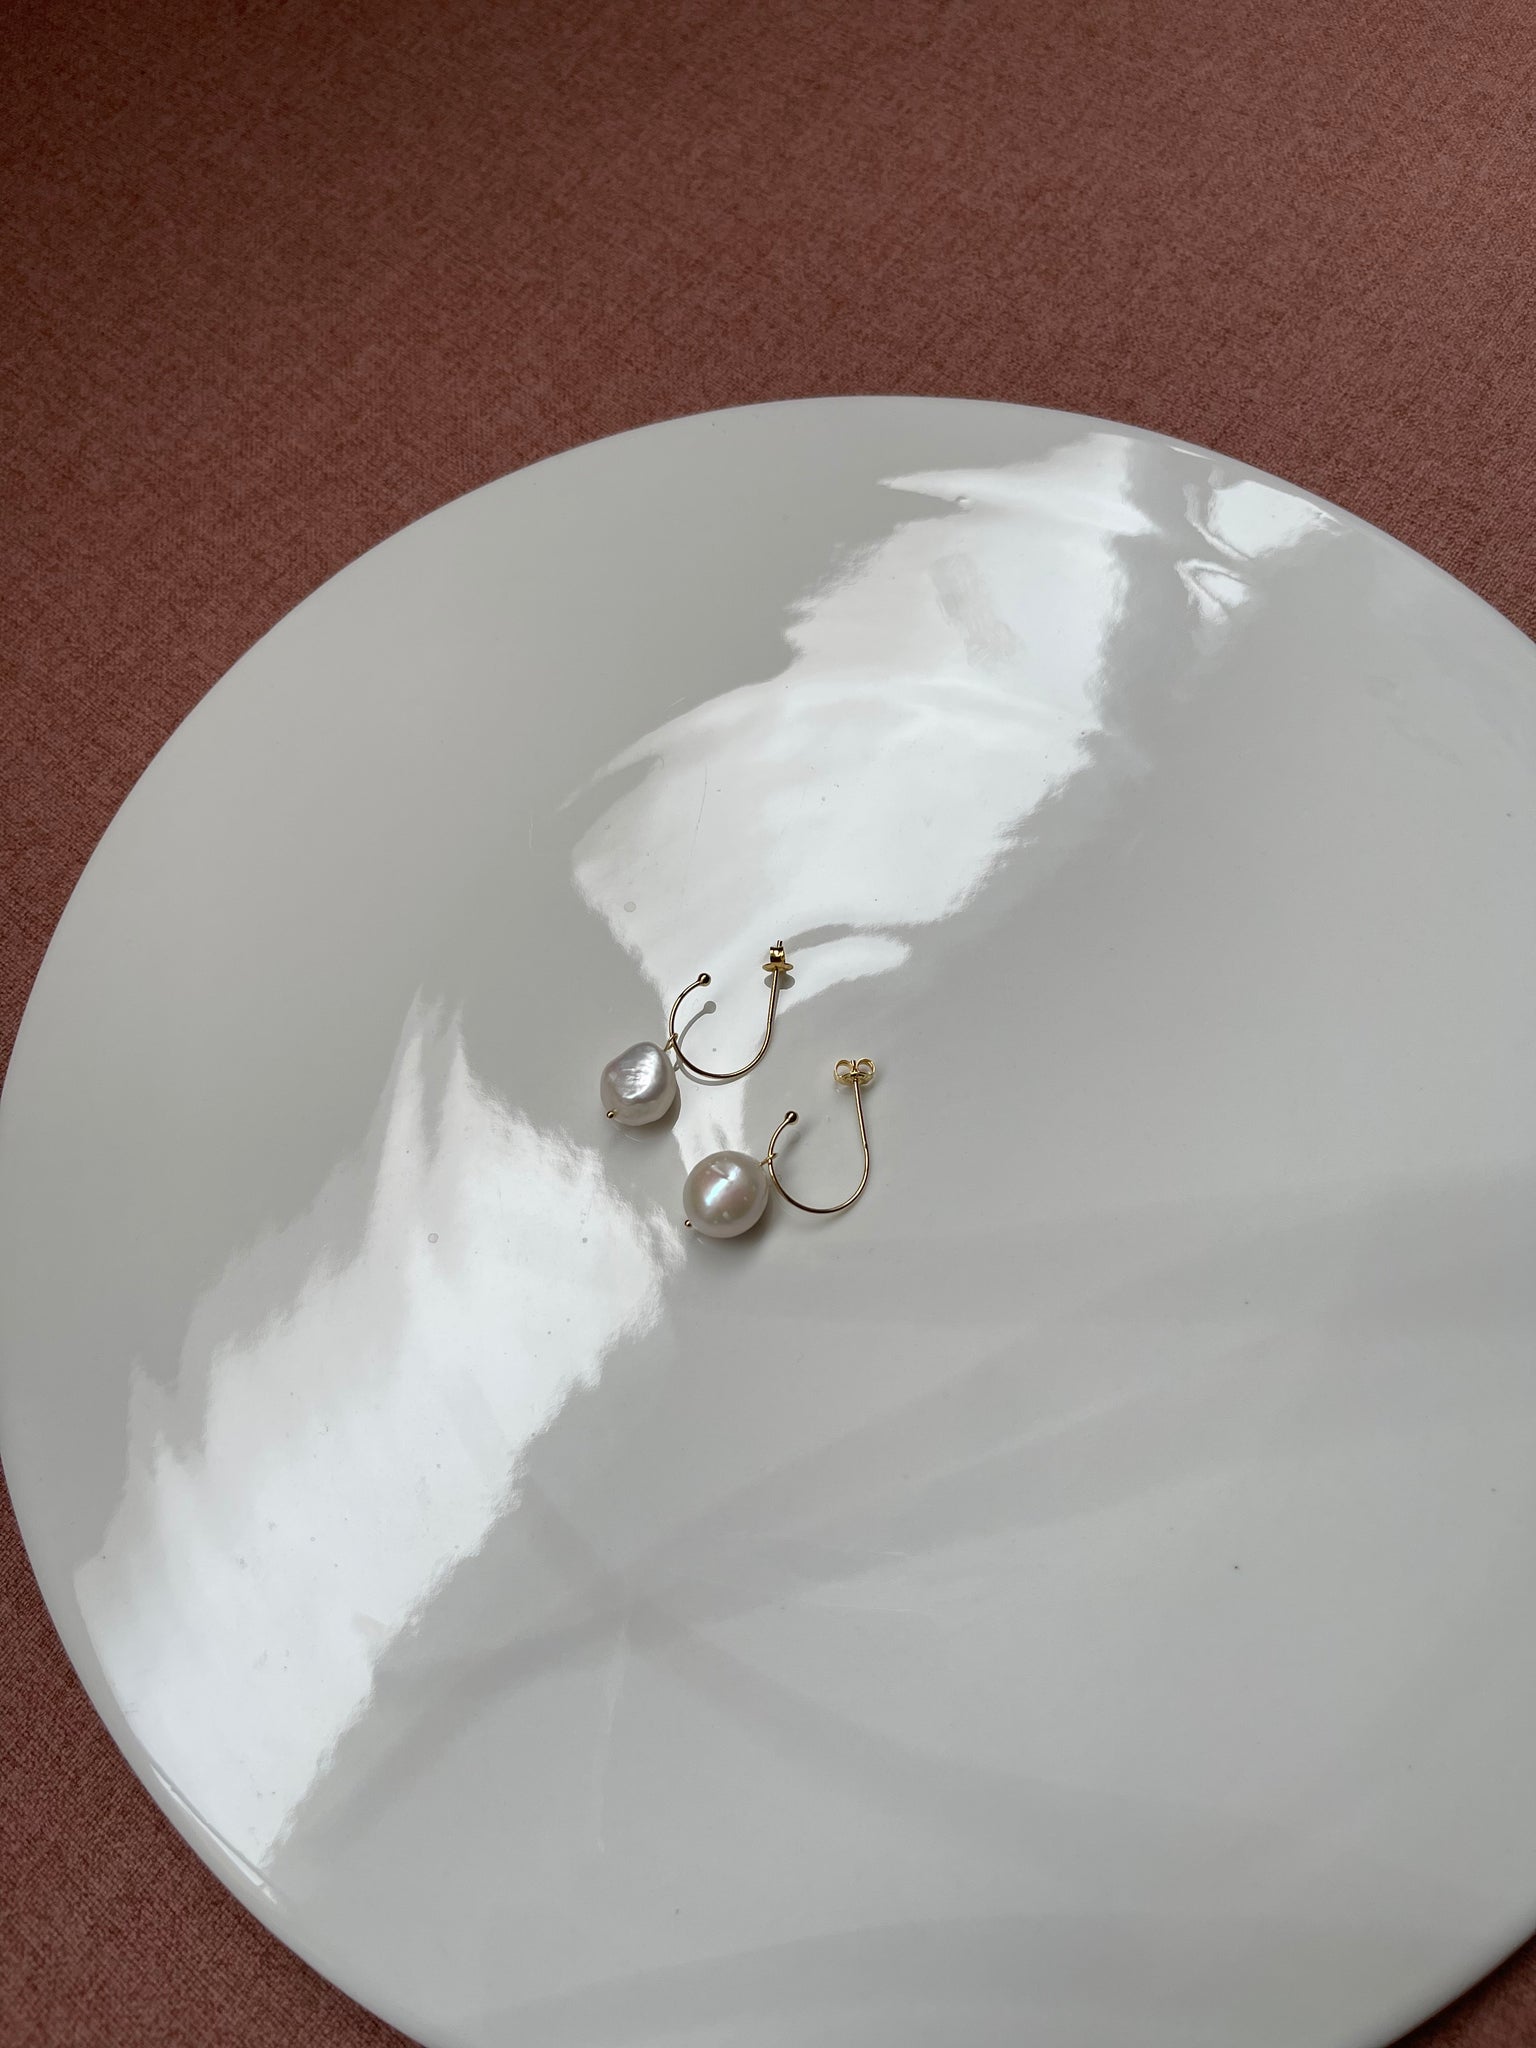 925 Silver Thin Hook Fresh Water Pearl Earrings